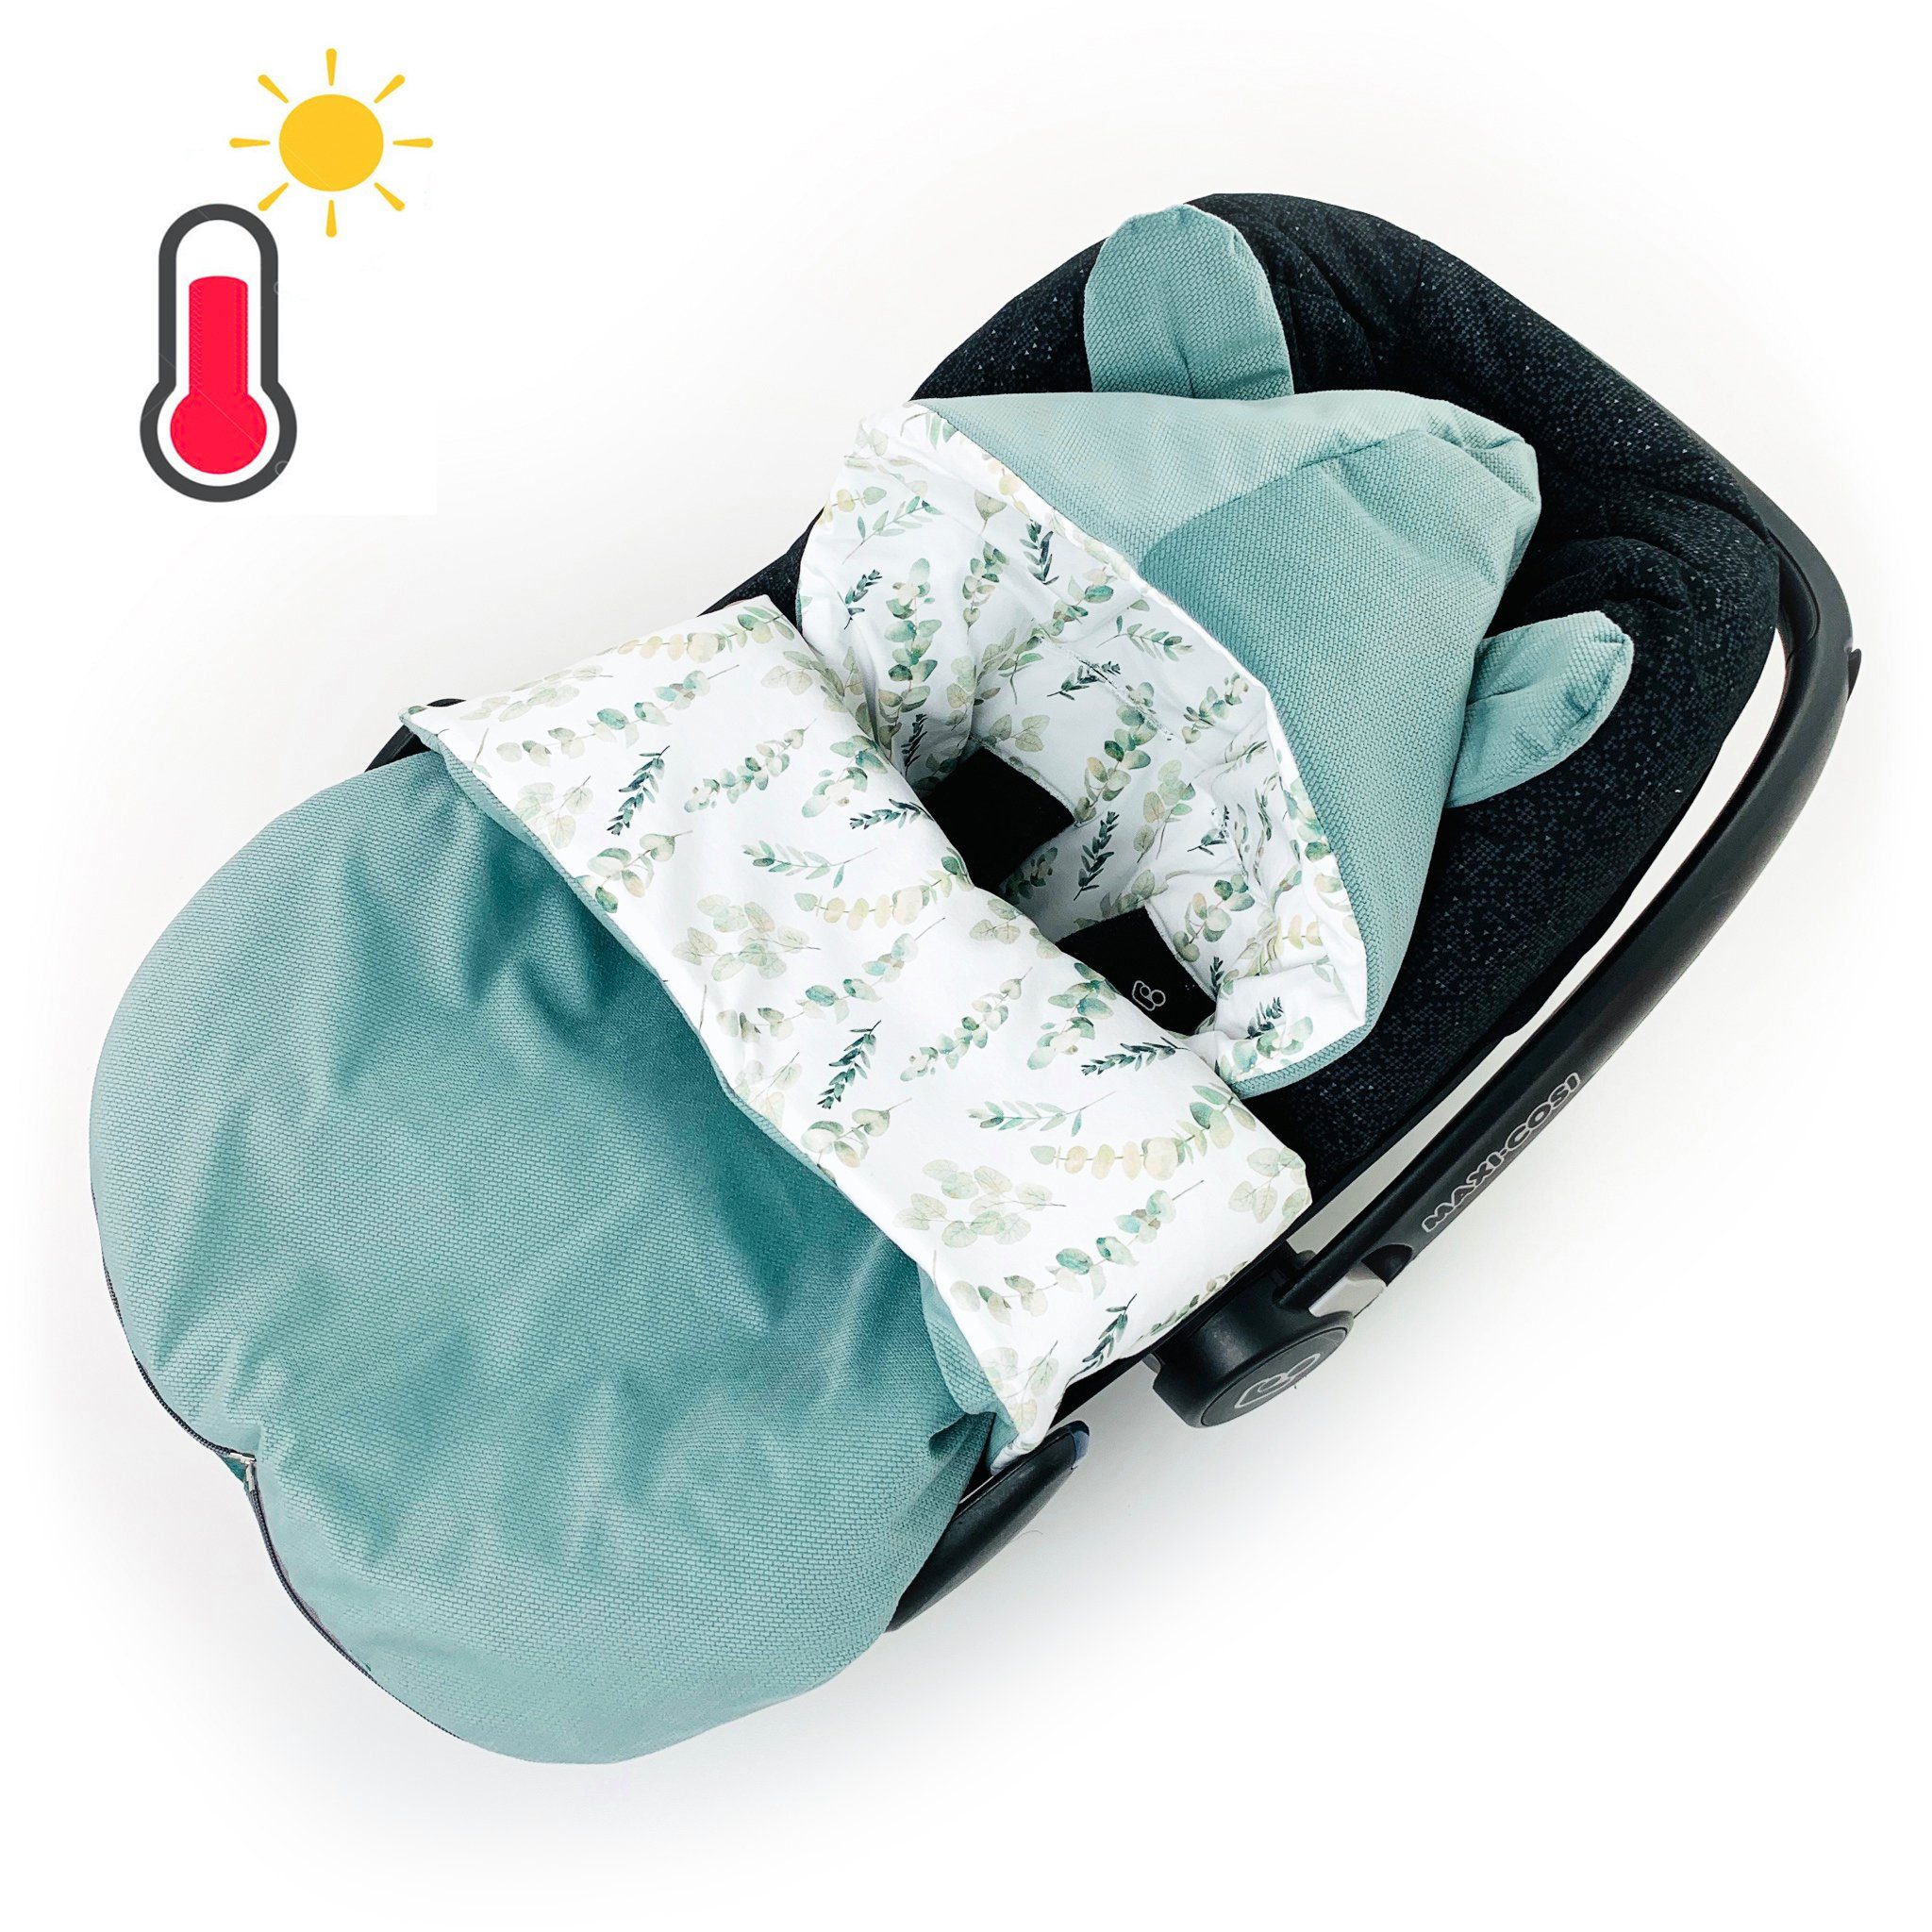 Herbst Schlafsack Fußsack BABEES Einschlagdecke Babyschale für Baby leicht Übergang wattiert,